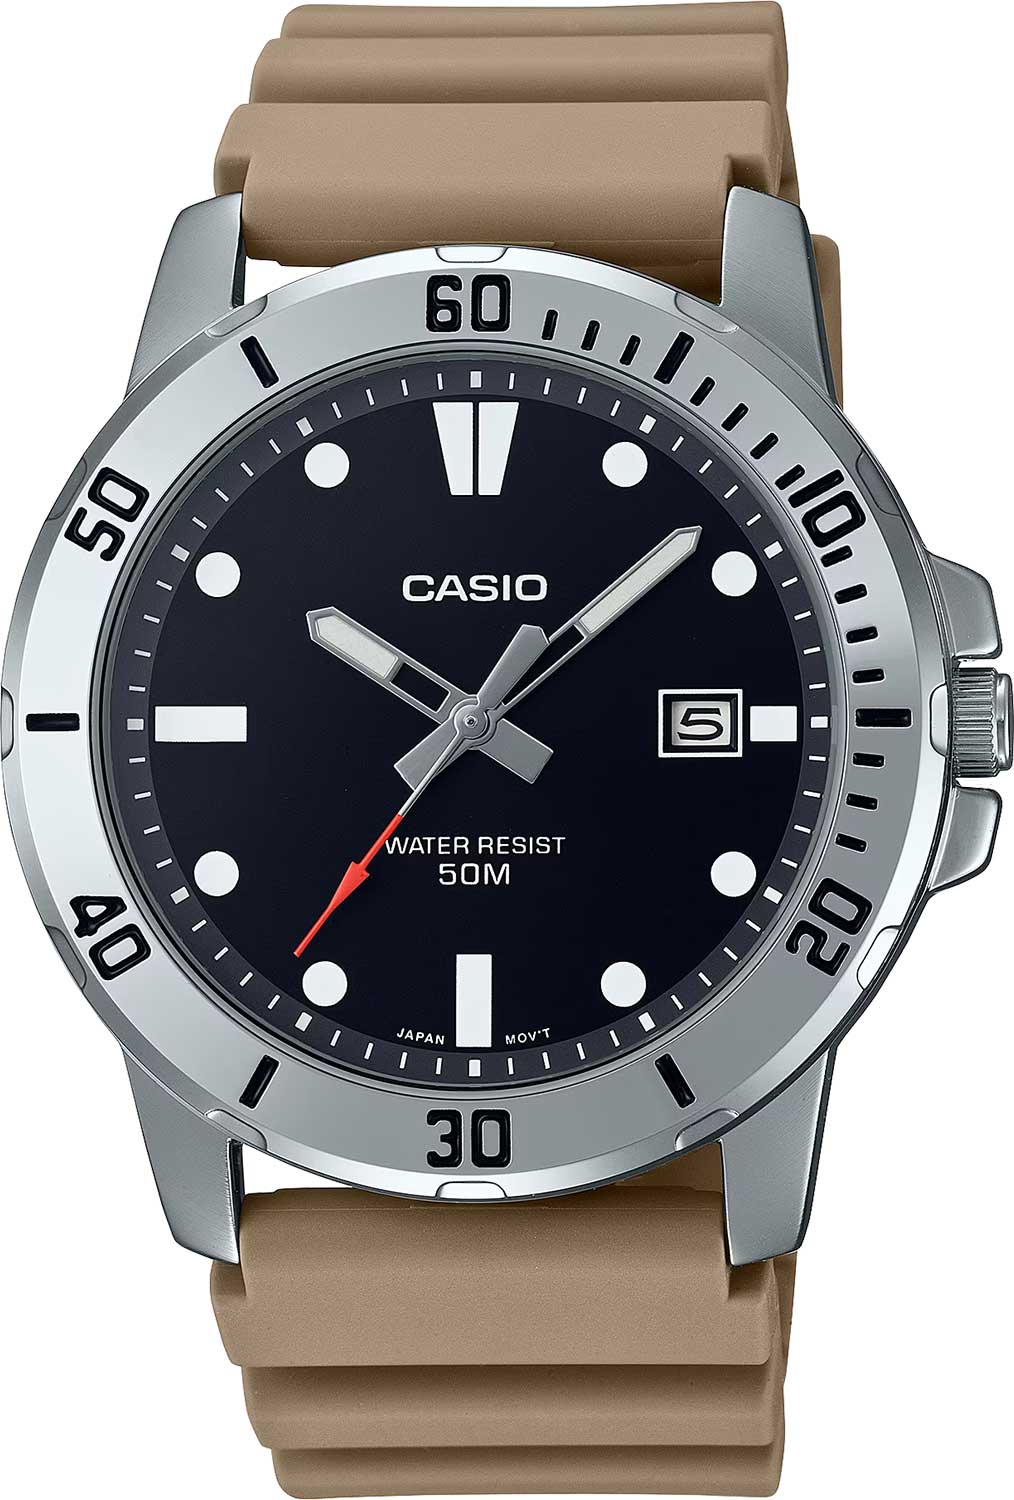 Наручные часы Casio MTP-VD01-5E наручные часы casio mtp vd01 2eudf